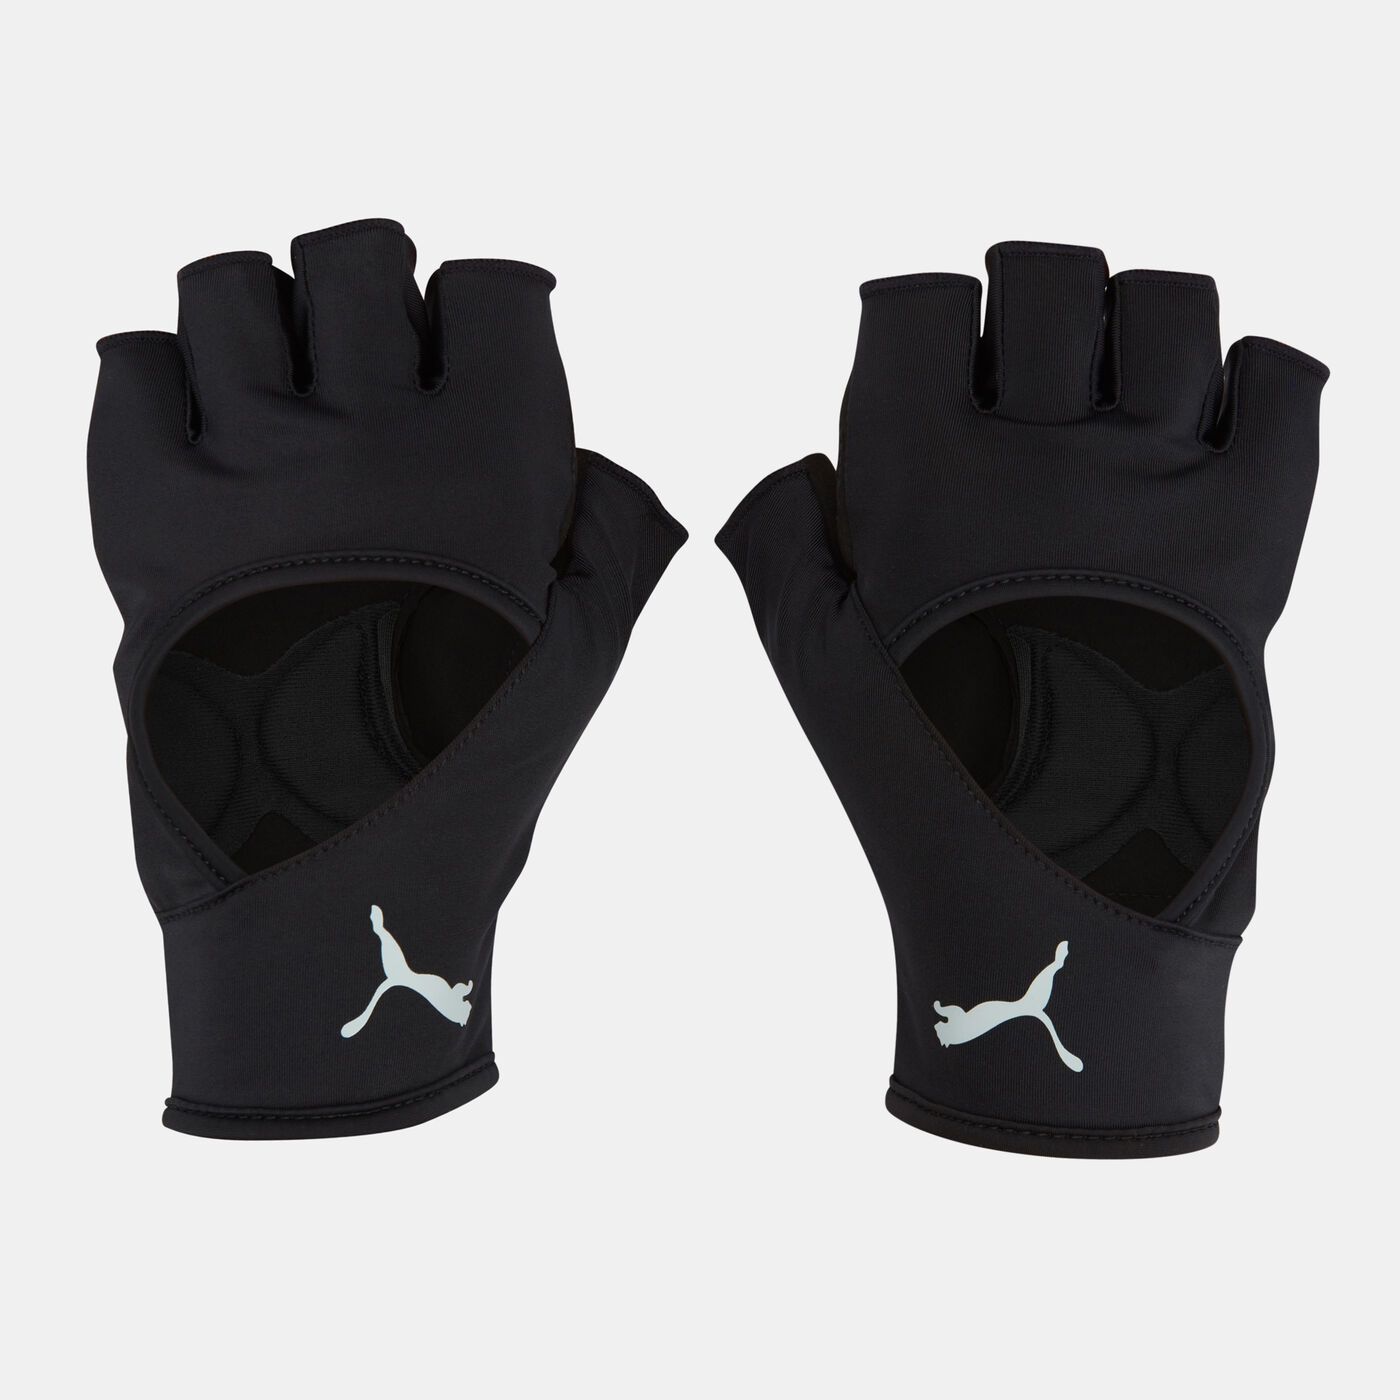 Men's Essential Training Gloves